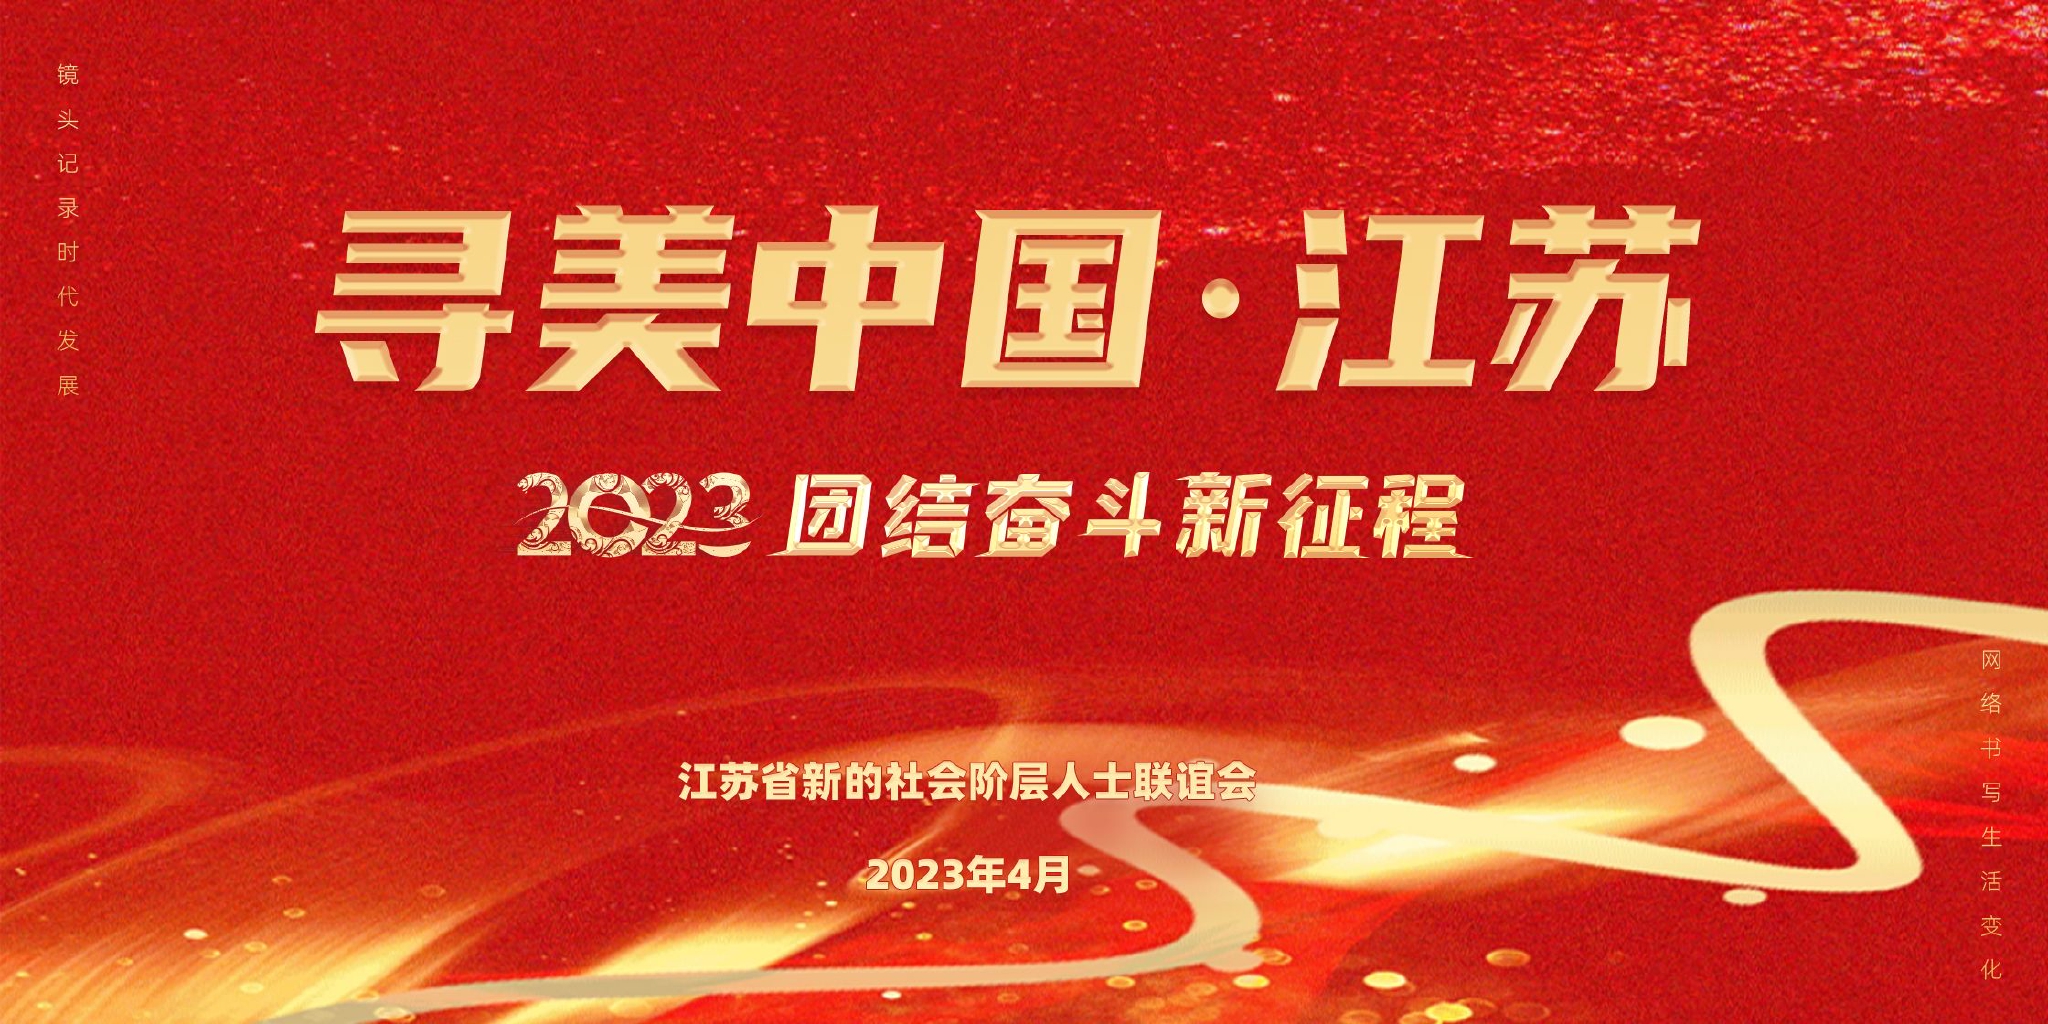 凝聚新力量 筑梦新时代——2023年“寻美中国·江苏”主题活动启动大会在南京举行